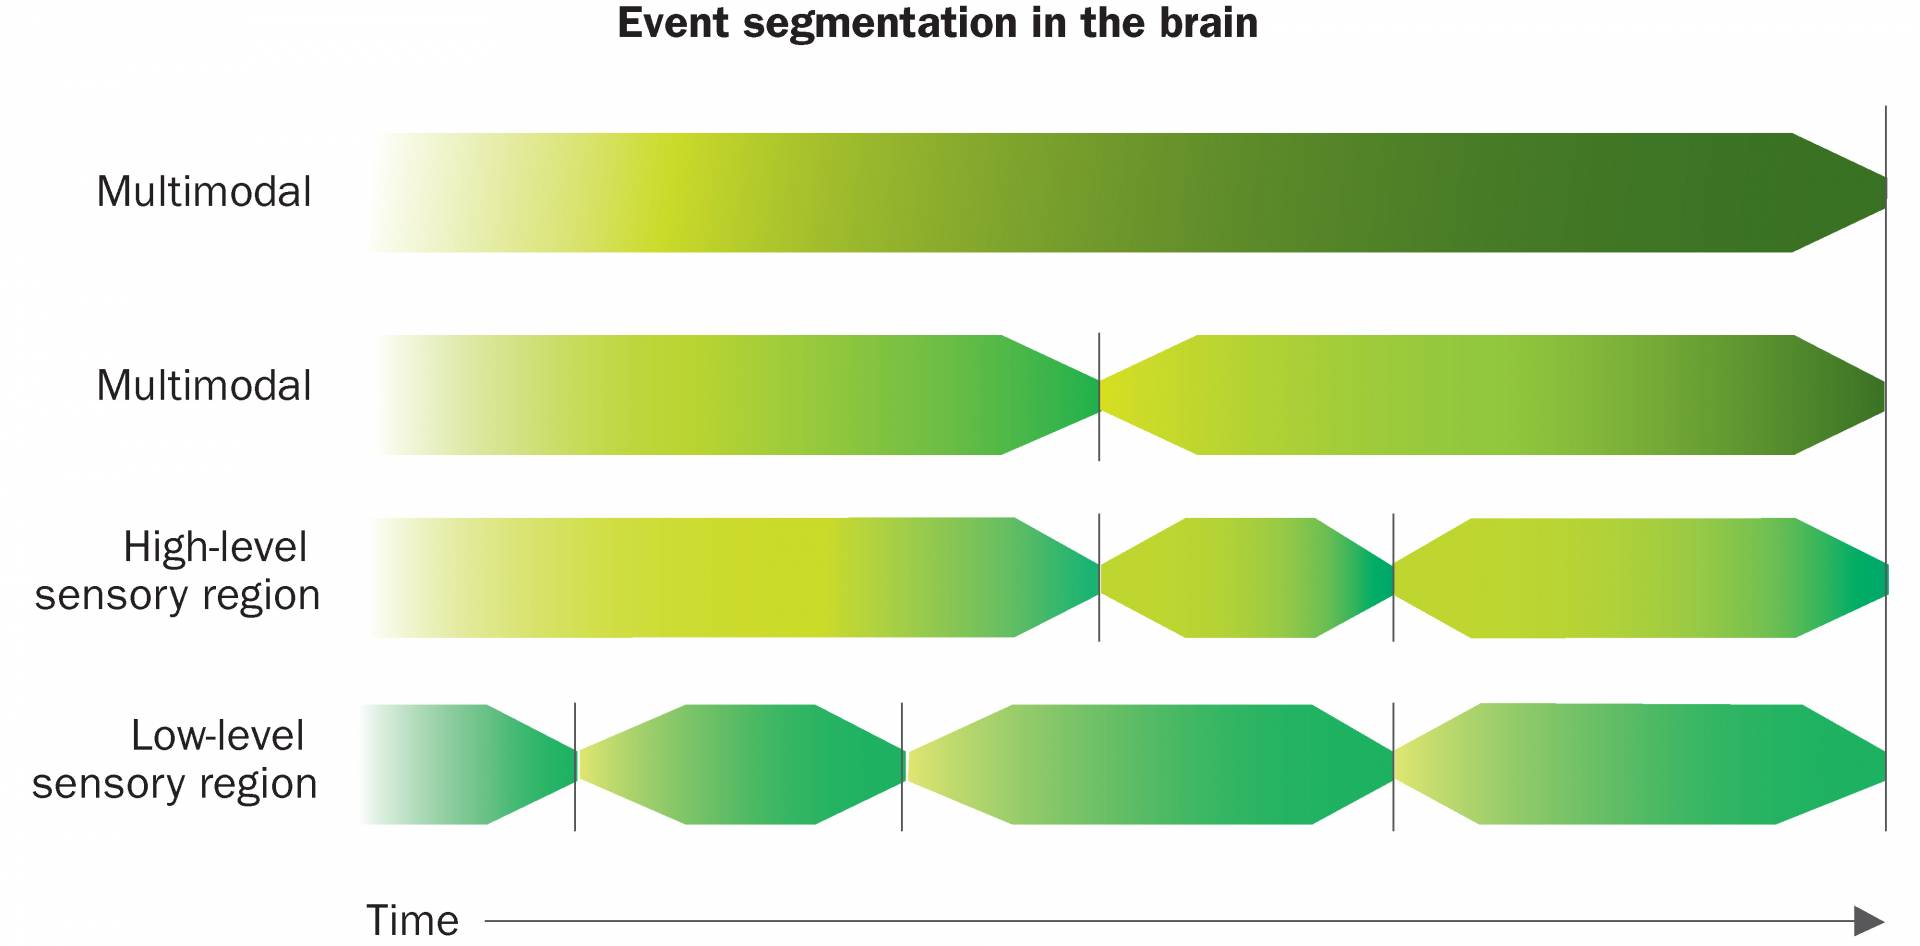 Event segmentation in the brain